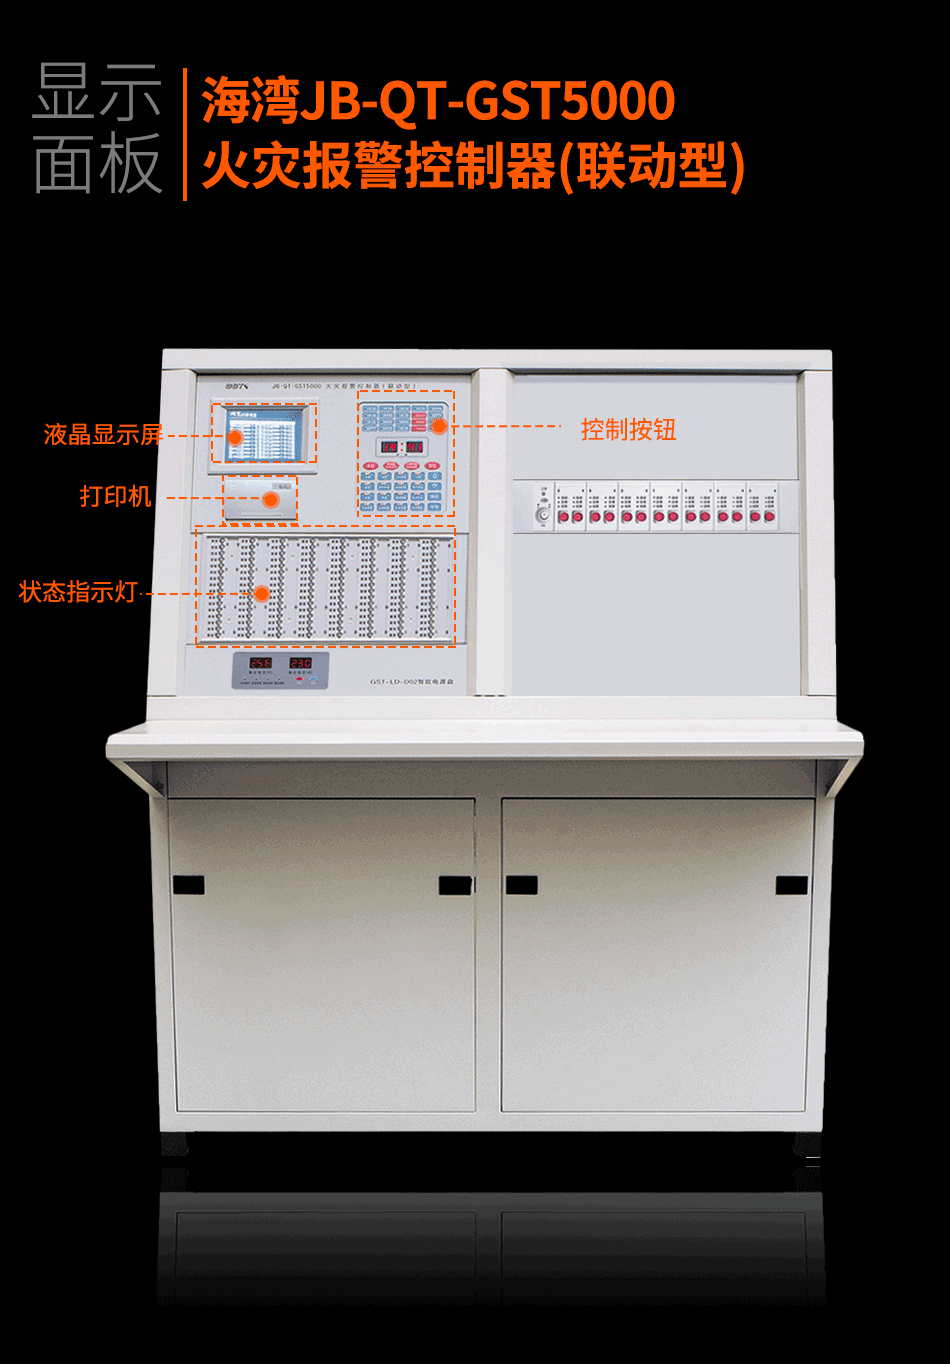 JB-QT-GST5000火灾报警控制器(联动型)显示面板